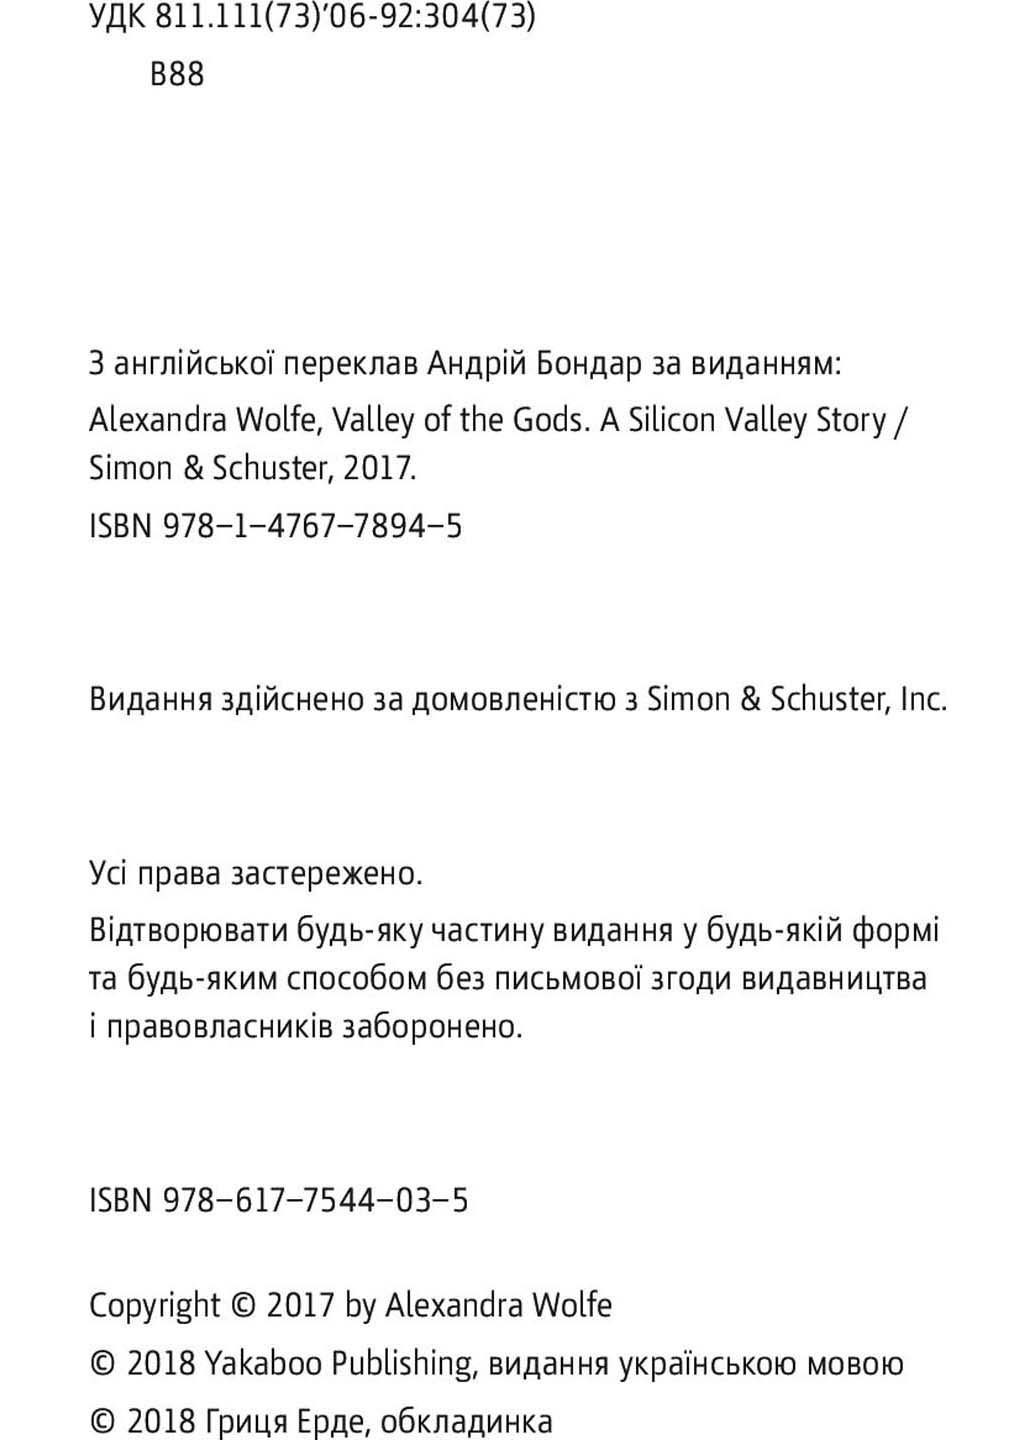 Книга Долина богов. Истории из Кремниевой долины Александра Вулф 2018г 288 с Yakaboo Publishing (293059428)